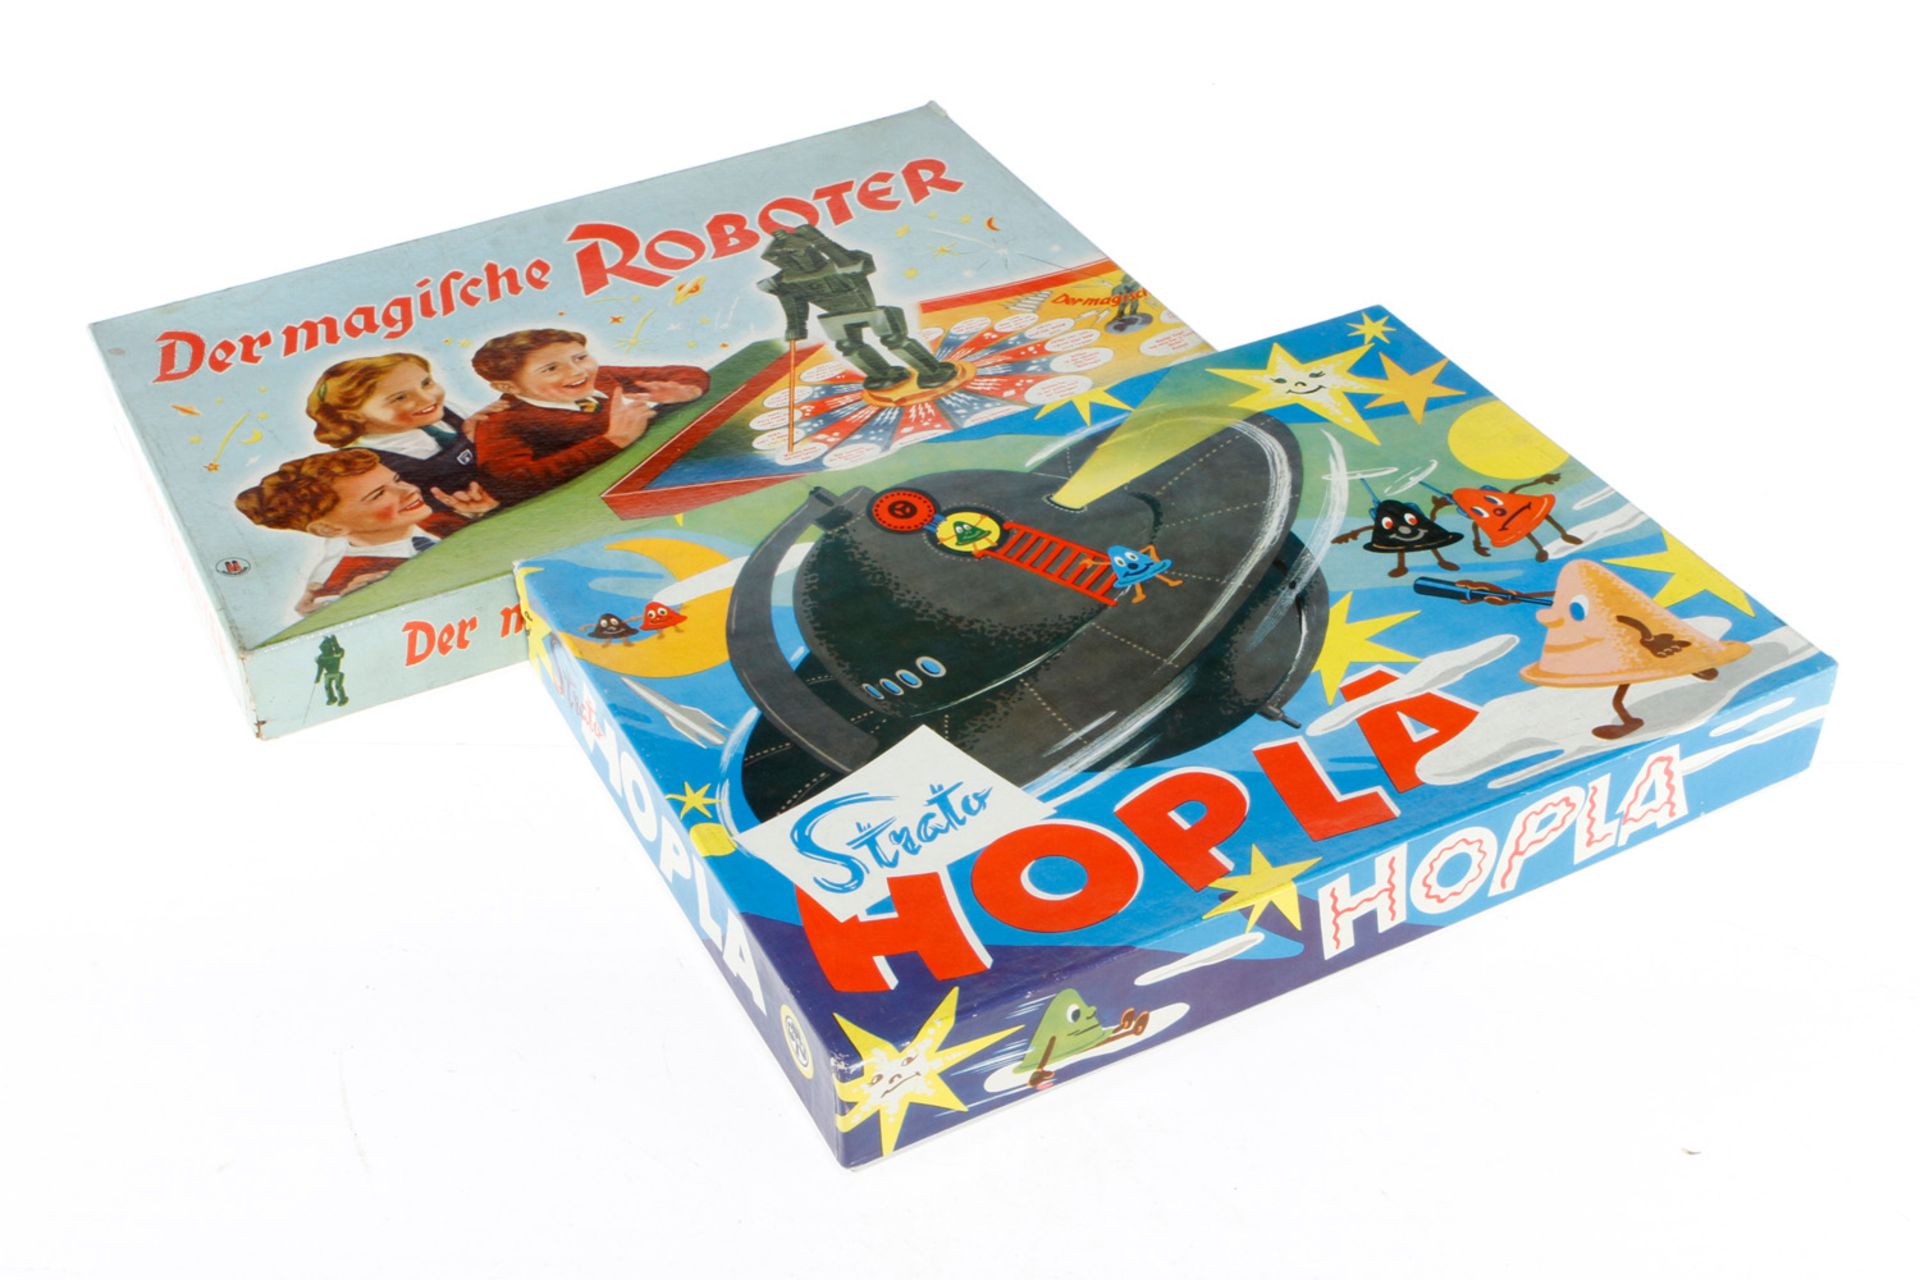 2 Spiele "Der Magische Roboter" und "Strato Hopla", wohl komplett, Alterungsspuren, Z 2-3